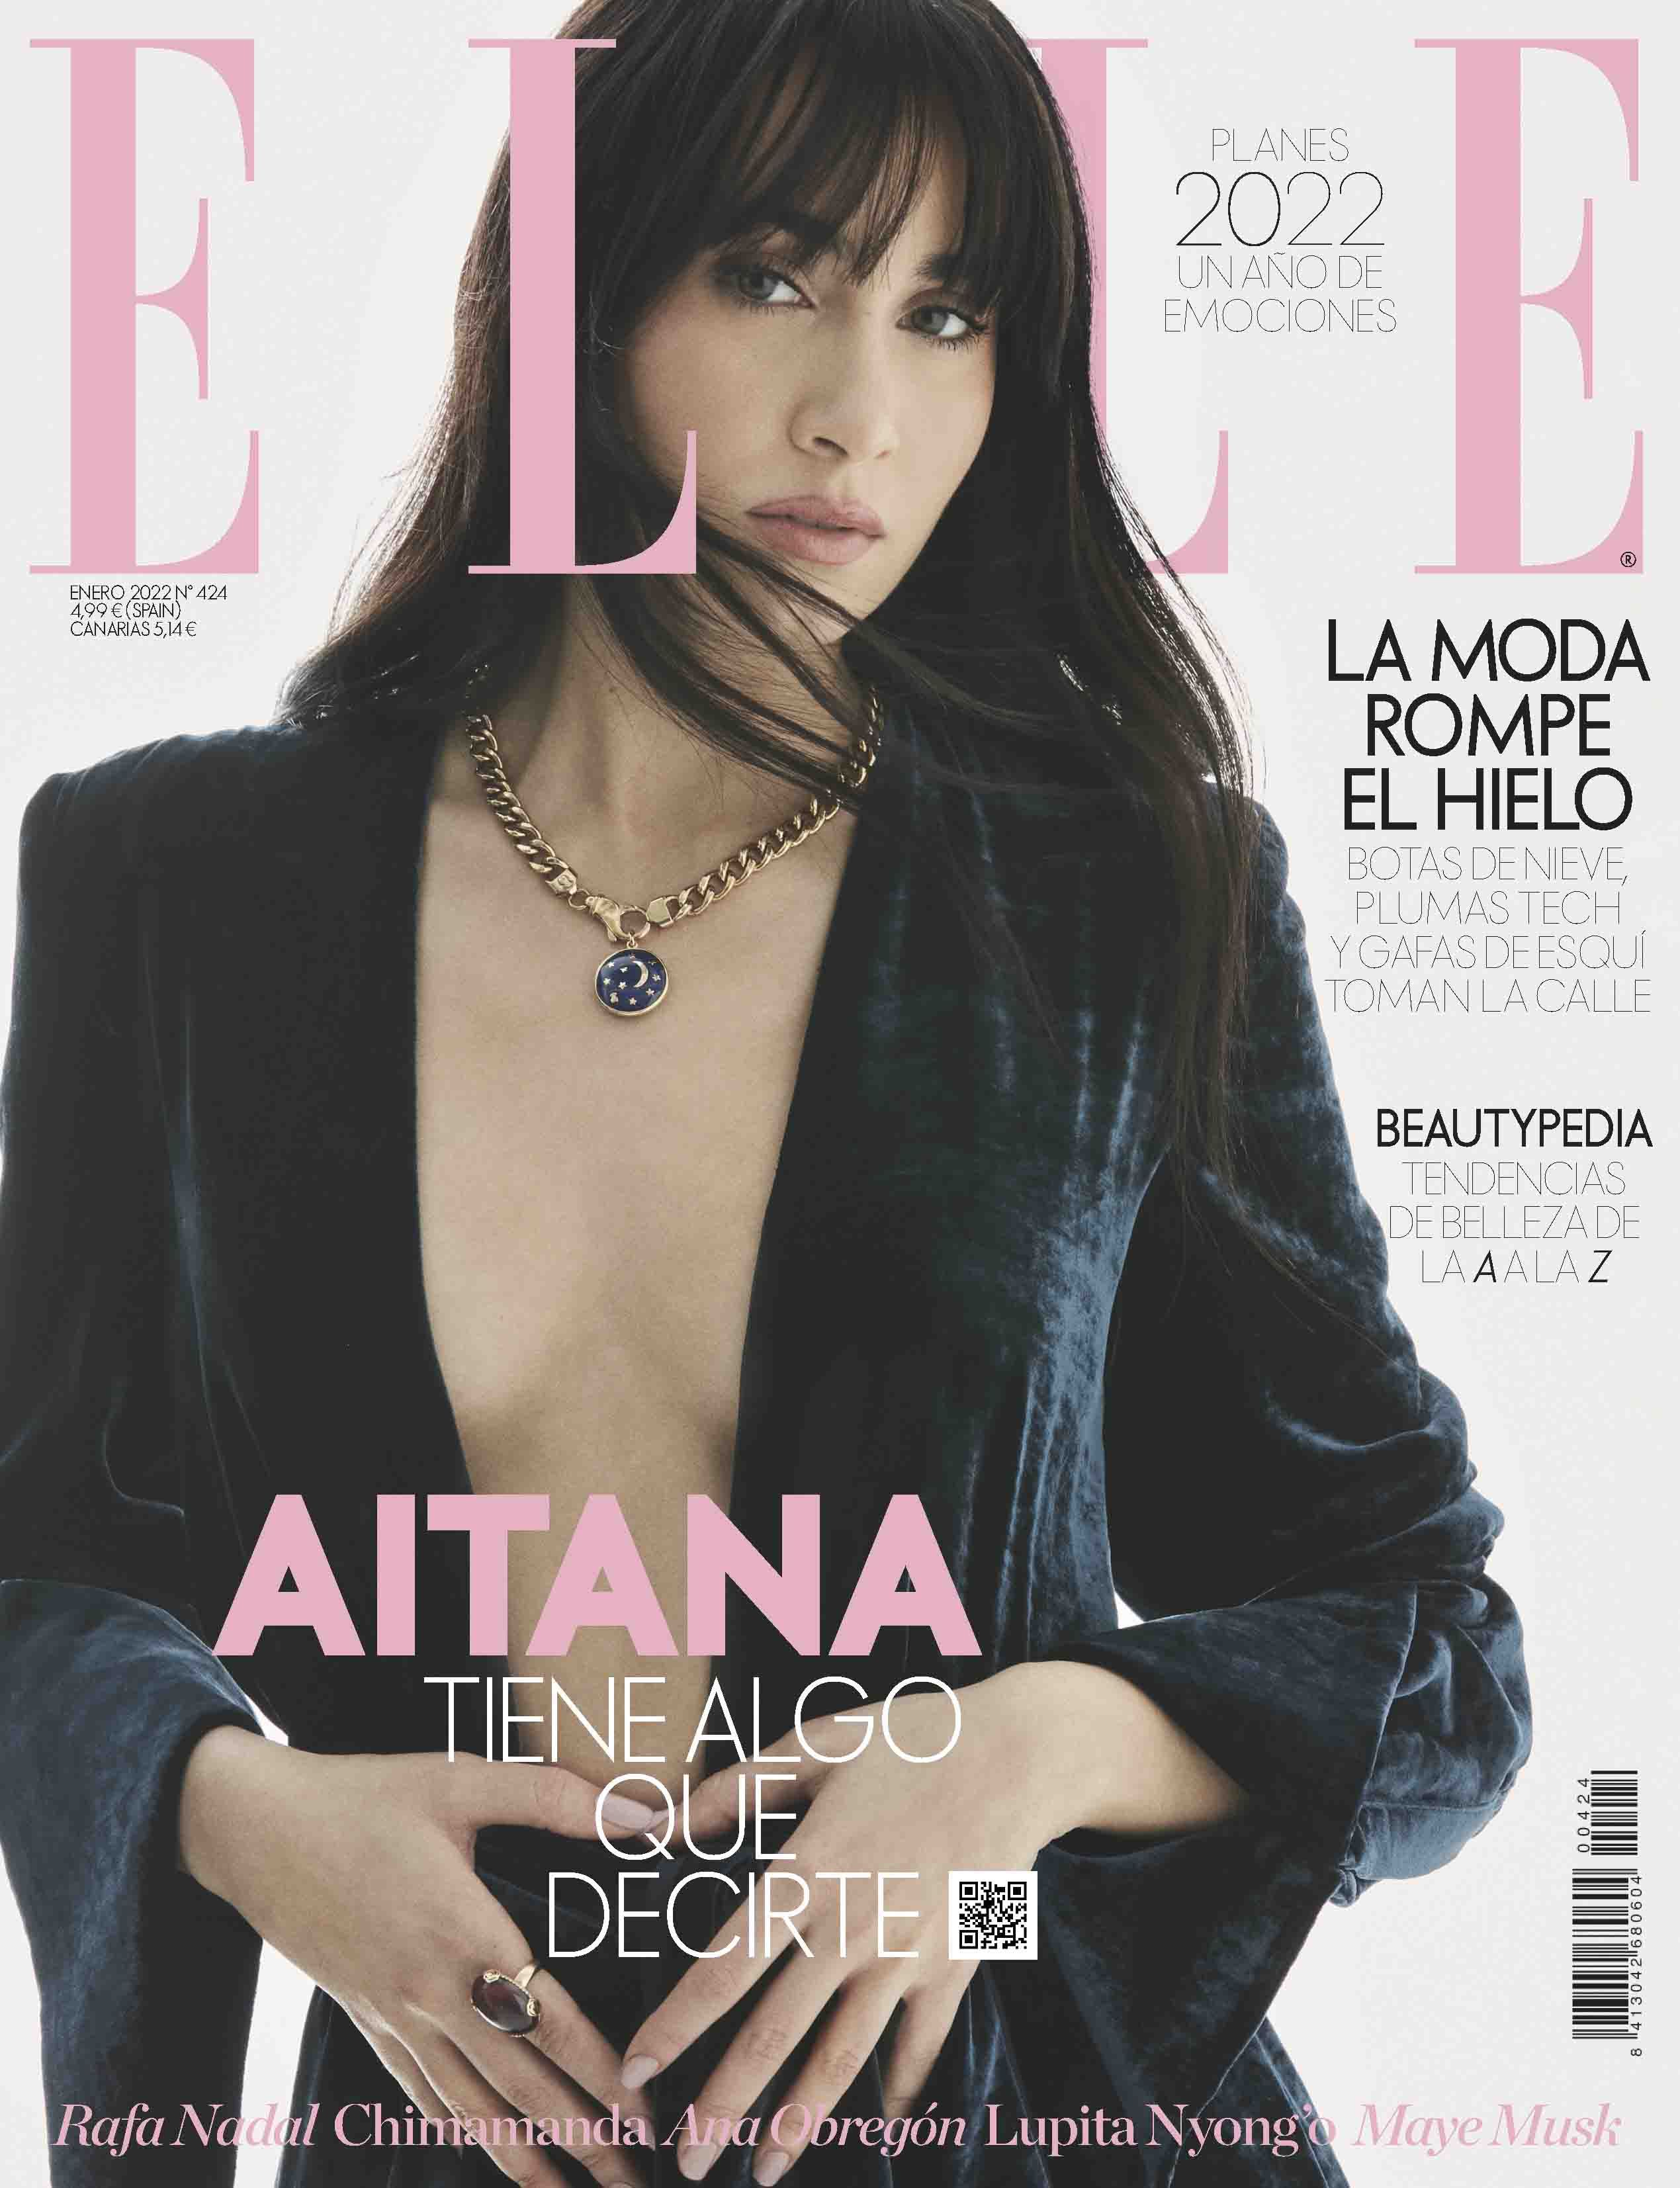 Aitana, espectacular portada de ELLE Enero